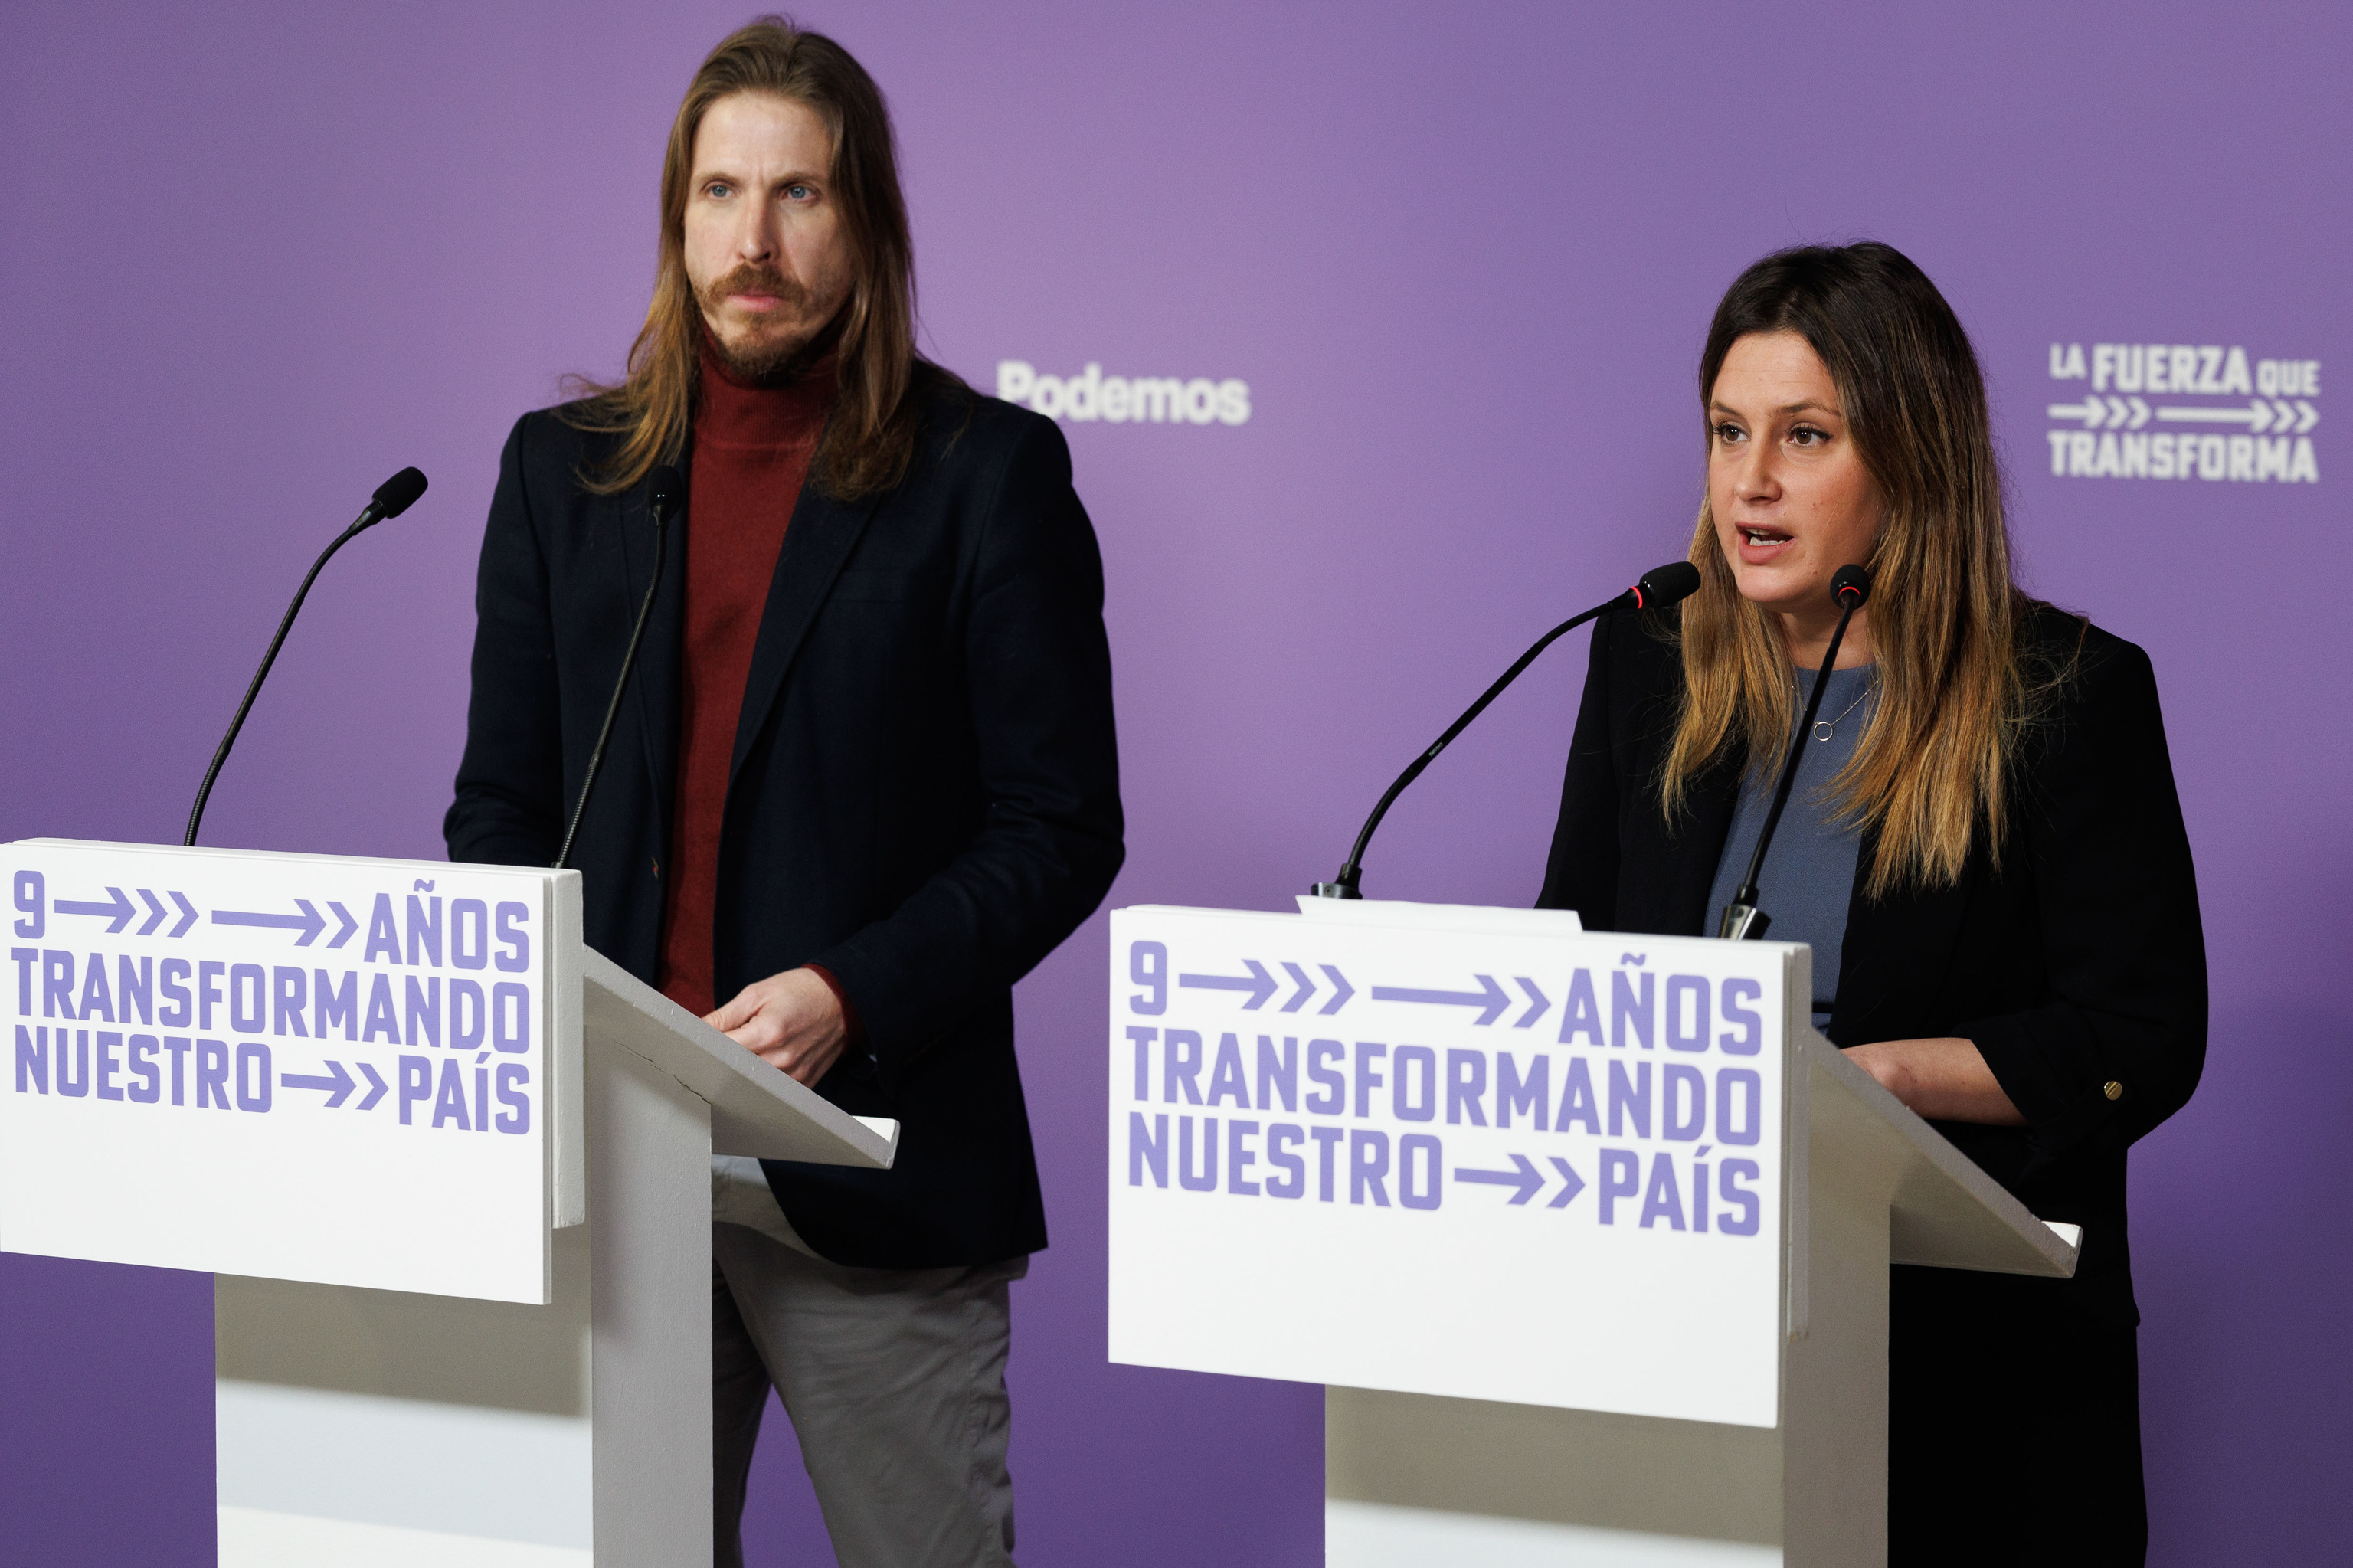 Pablo Fernndez y Alejandra Jacinto, en rueda de prensa en la sede de Podemos.